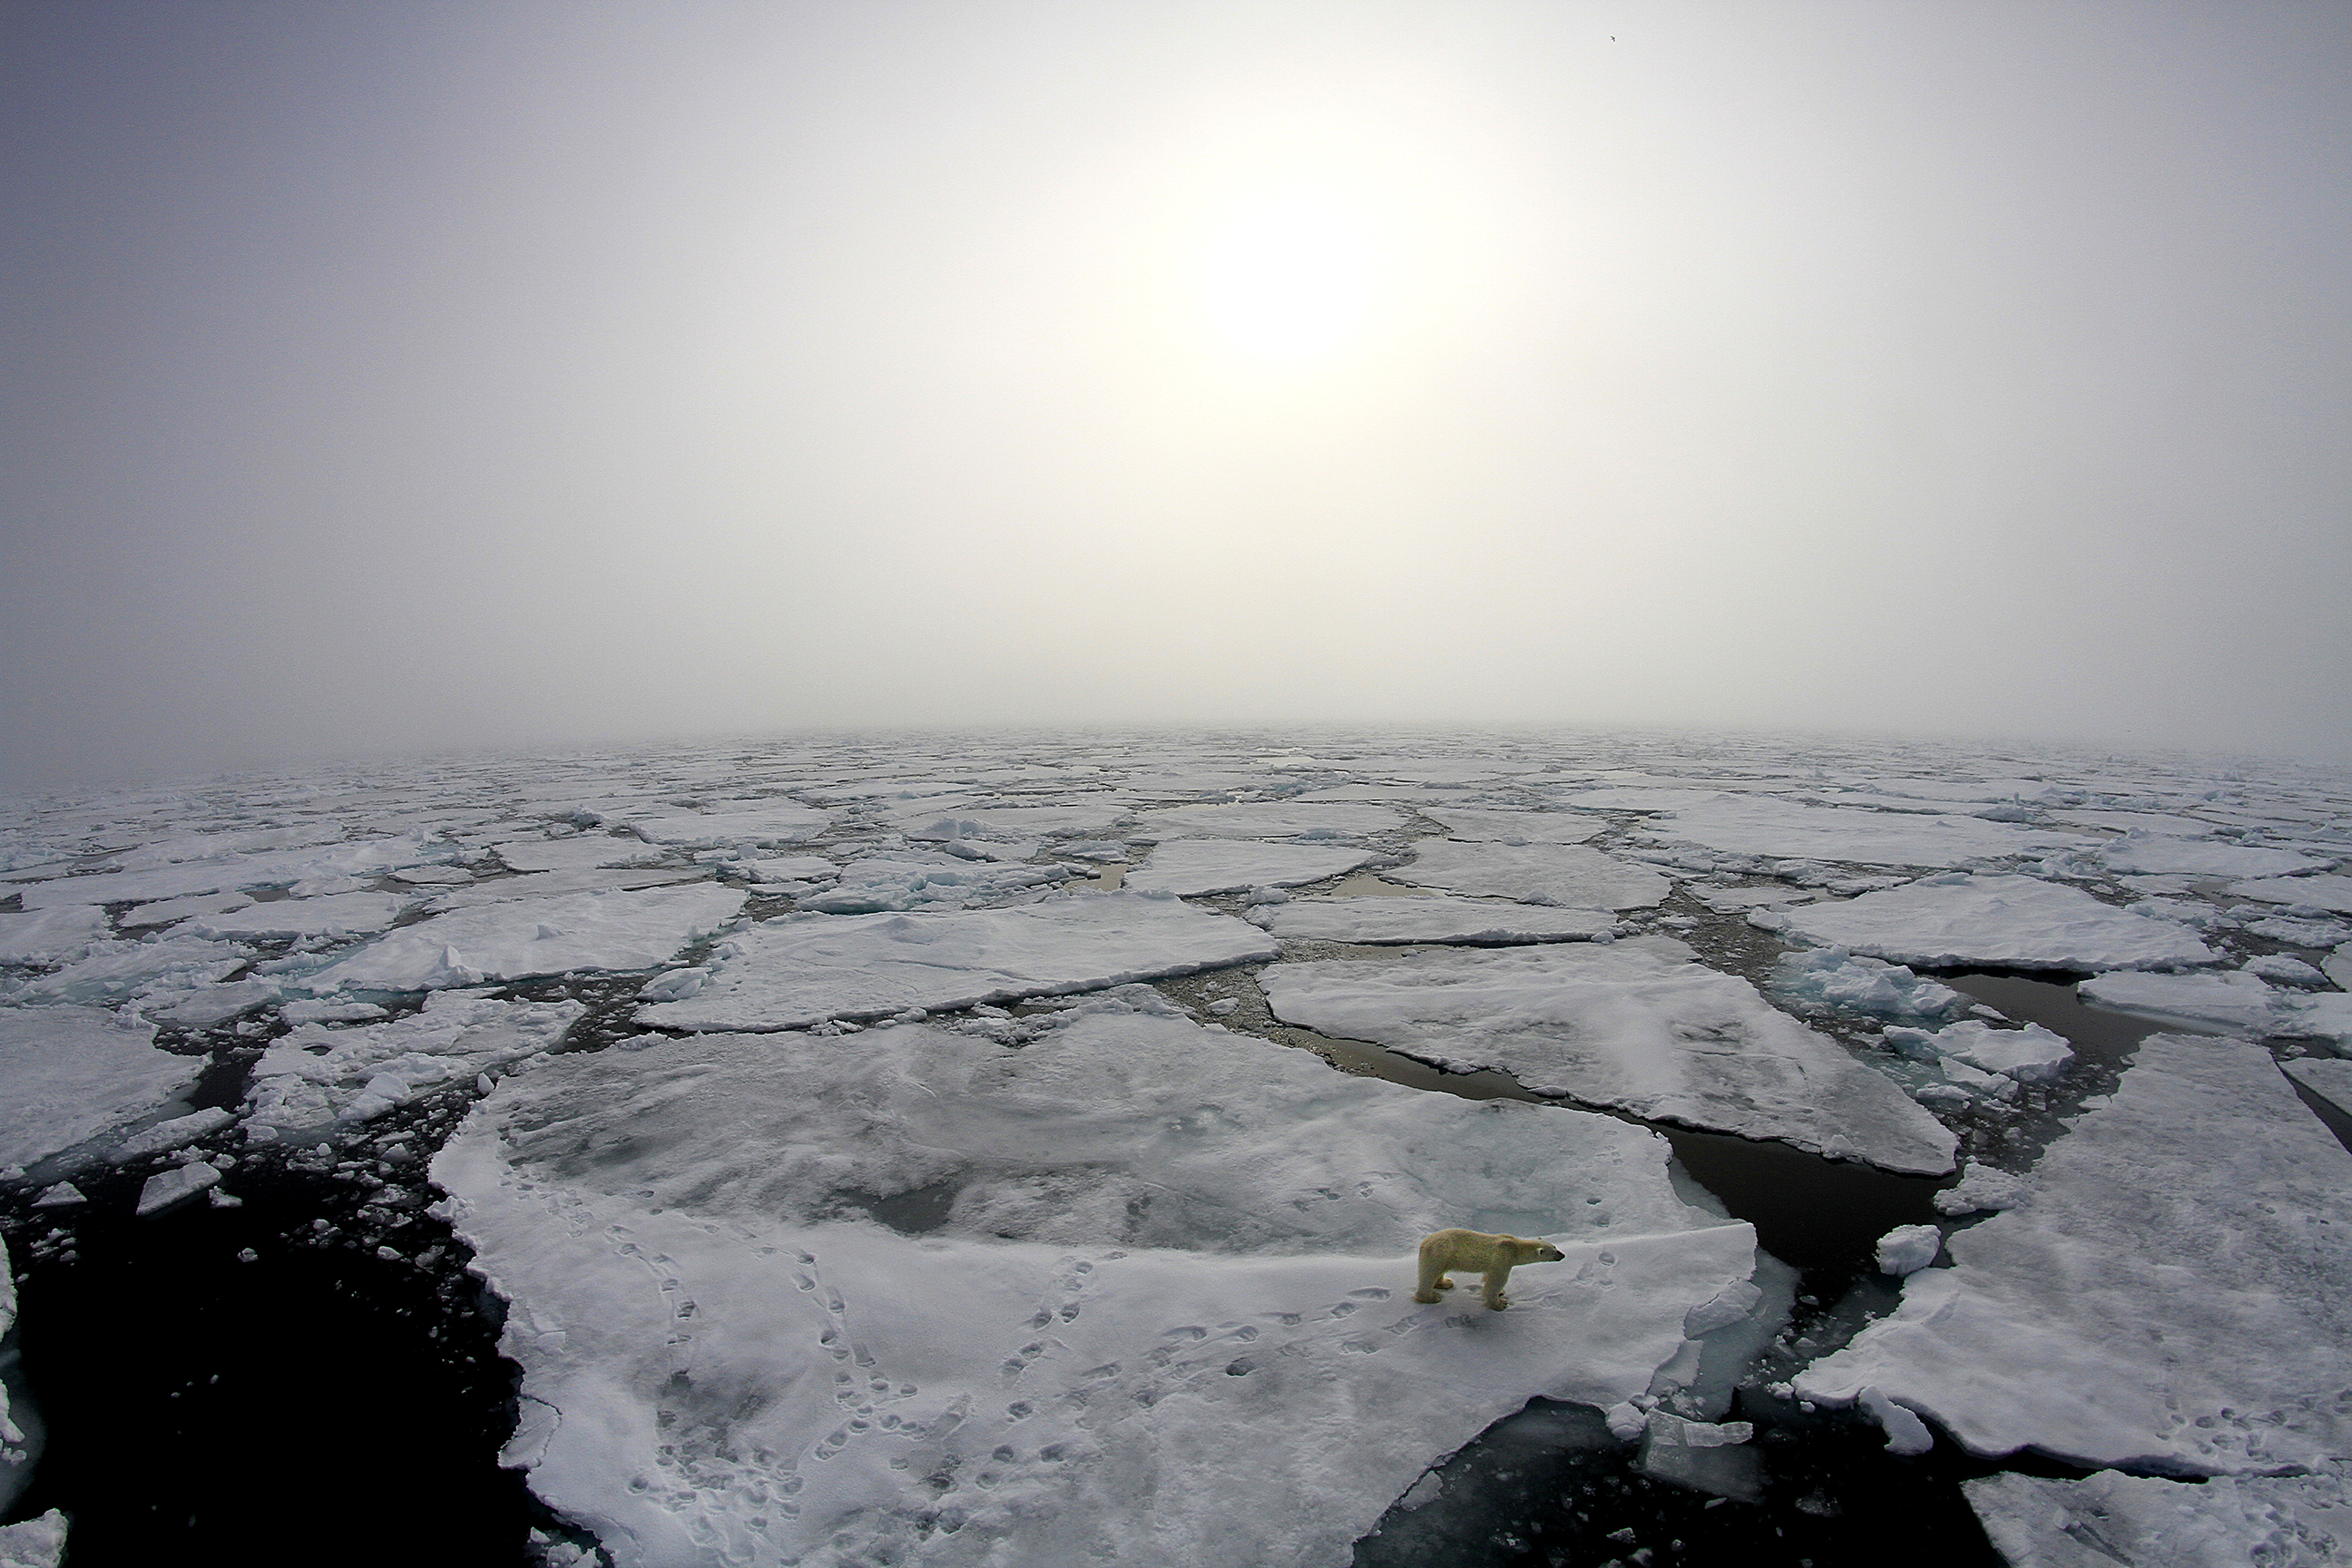 Un orso polare sulla superficie ghiacciata fratturata vicino alla nave della spedizione Norwegian Young Sea ICE. Credit: Marcos Porcires/Norwegian Polar Institute.